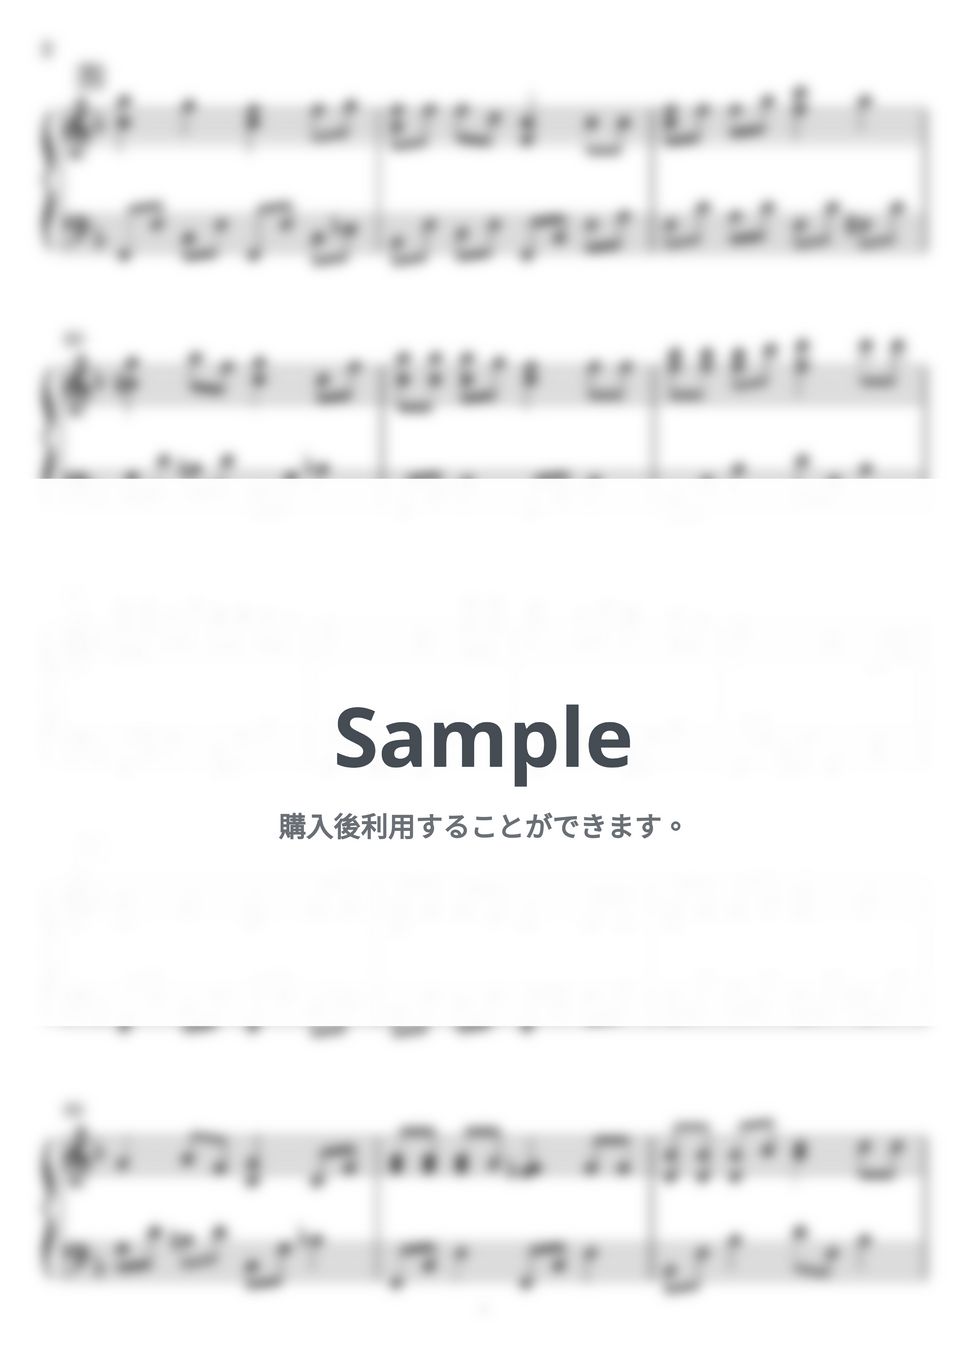 あわてんぼうのサンタクロース (ピアノソロ) by Miz